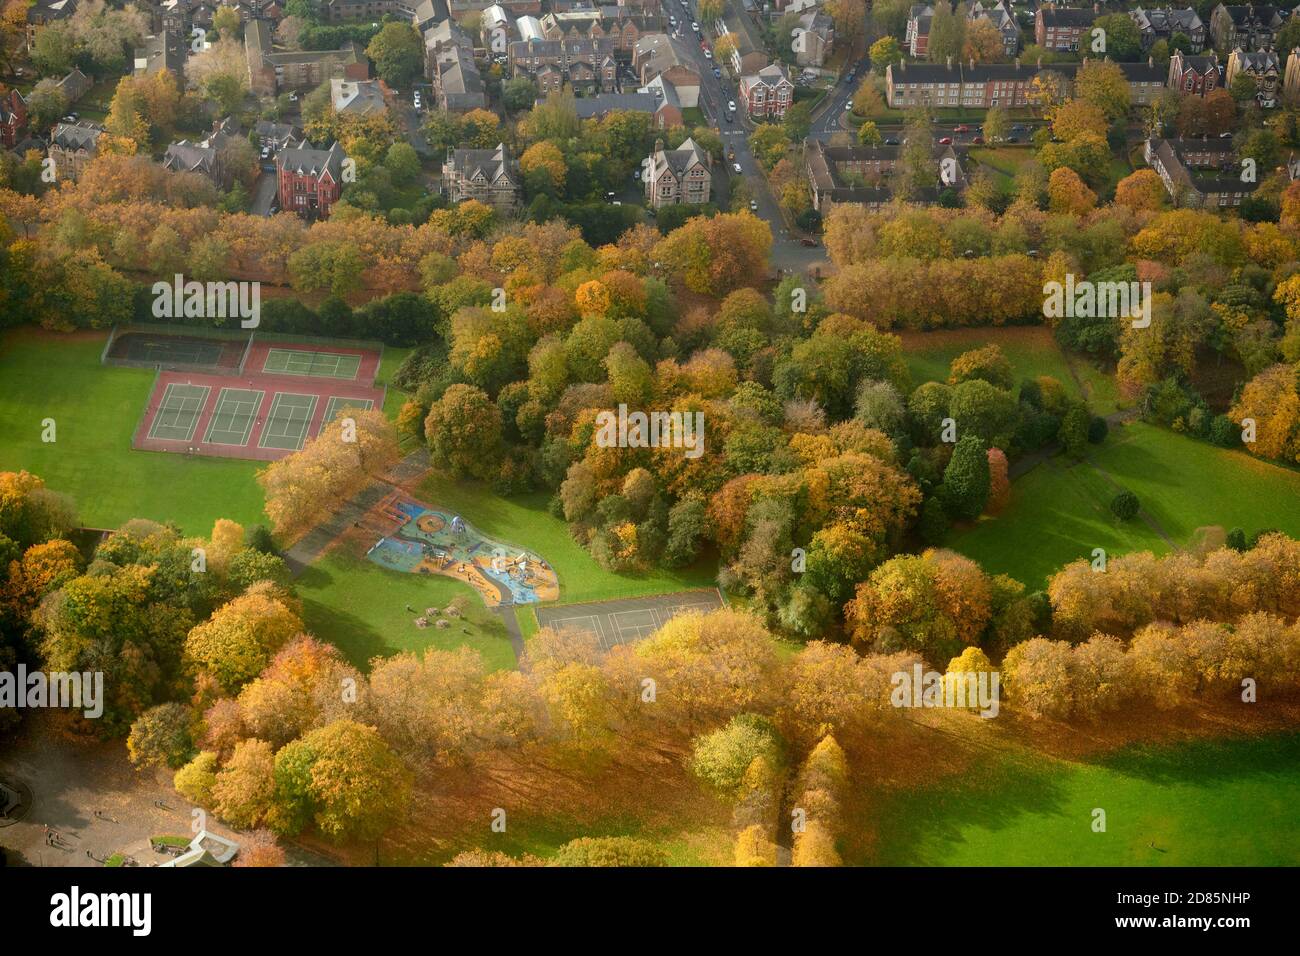 La splendeur des couleurs automnales au parc Sefton, Liverpool Merseyside, nord-ouest de l'Angleterre, Royaume-Uni Banque D'Images